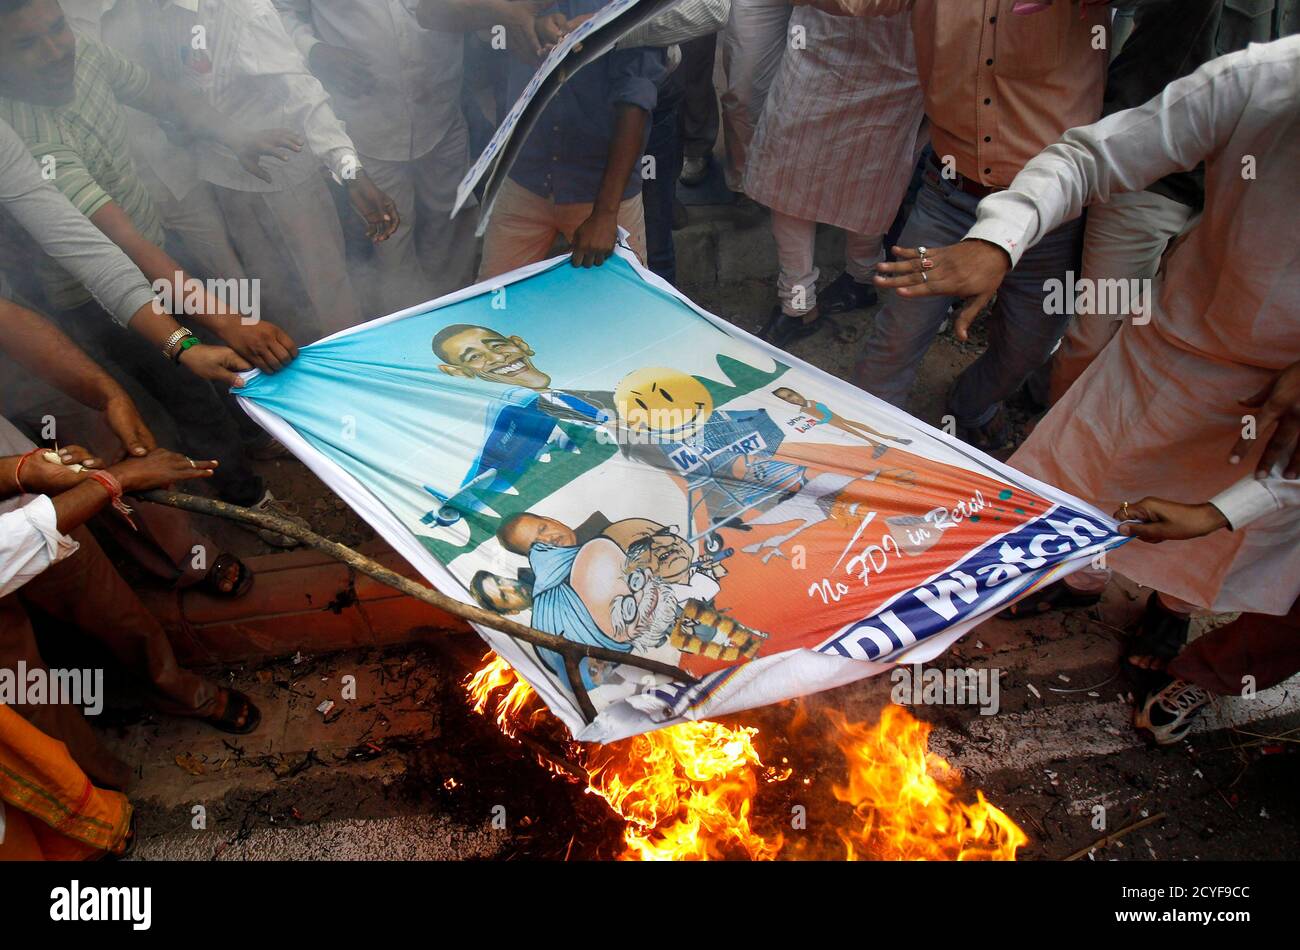 Activistas del grupo Swadesh Jagaran Manch queman una efigie y una bandera del presidente estadounidense Barack Obama durante una protesta contra su visita a la India, en Nueva Delhi el 8 de noviembre de 2010. Cientos de activistas protestaron el lunes contra la política del gobierno de abrir el sector minorista a empresas multinacionales en el contexto de la visita de Obama a la India. REUTERS/ADNAN ABIDI (INDIA - TAGS: DISTURBIOS CIVILES POLÍTICA IMÁGENES DEL DÍA DE NEGOCIOS) Foto de stock